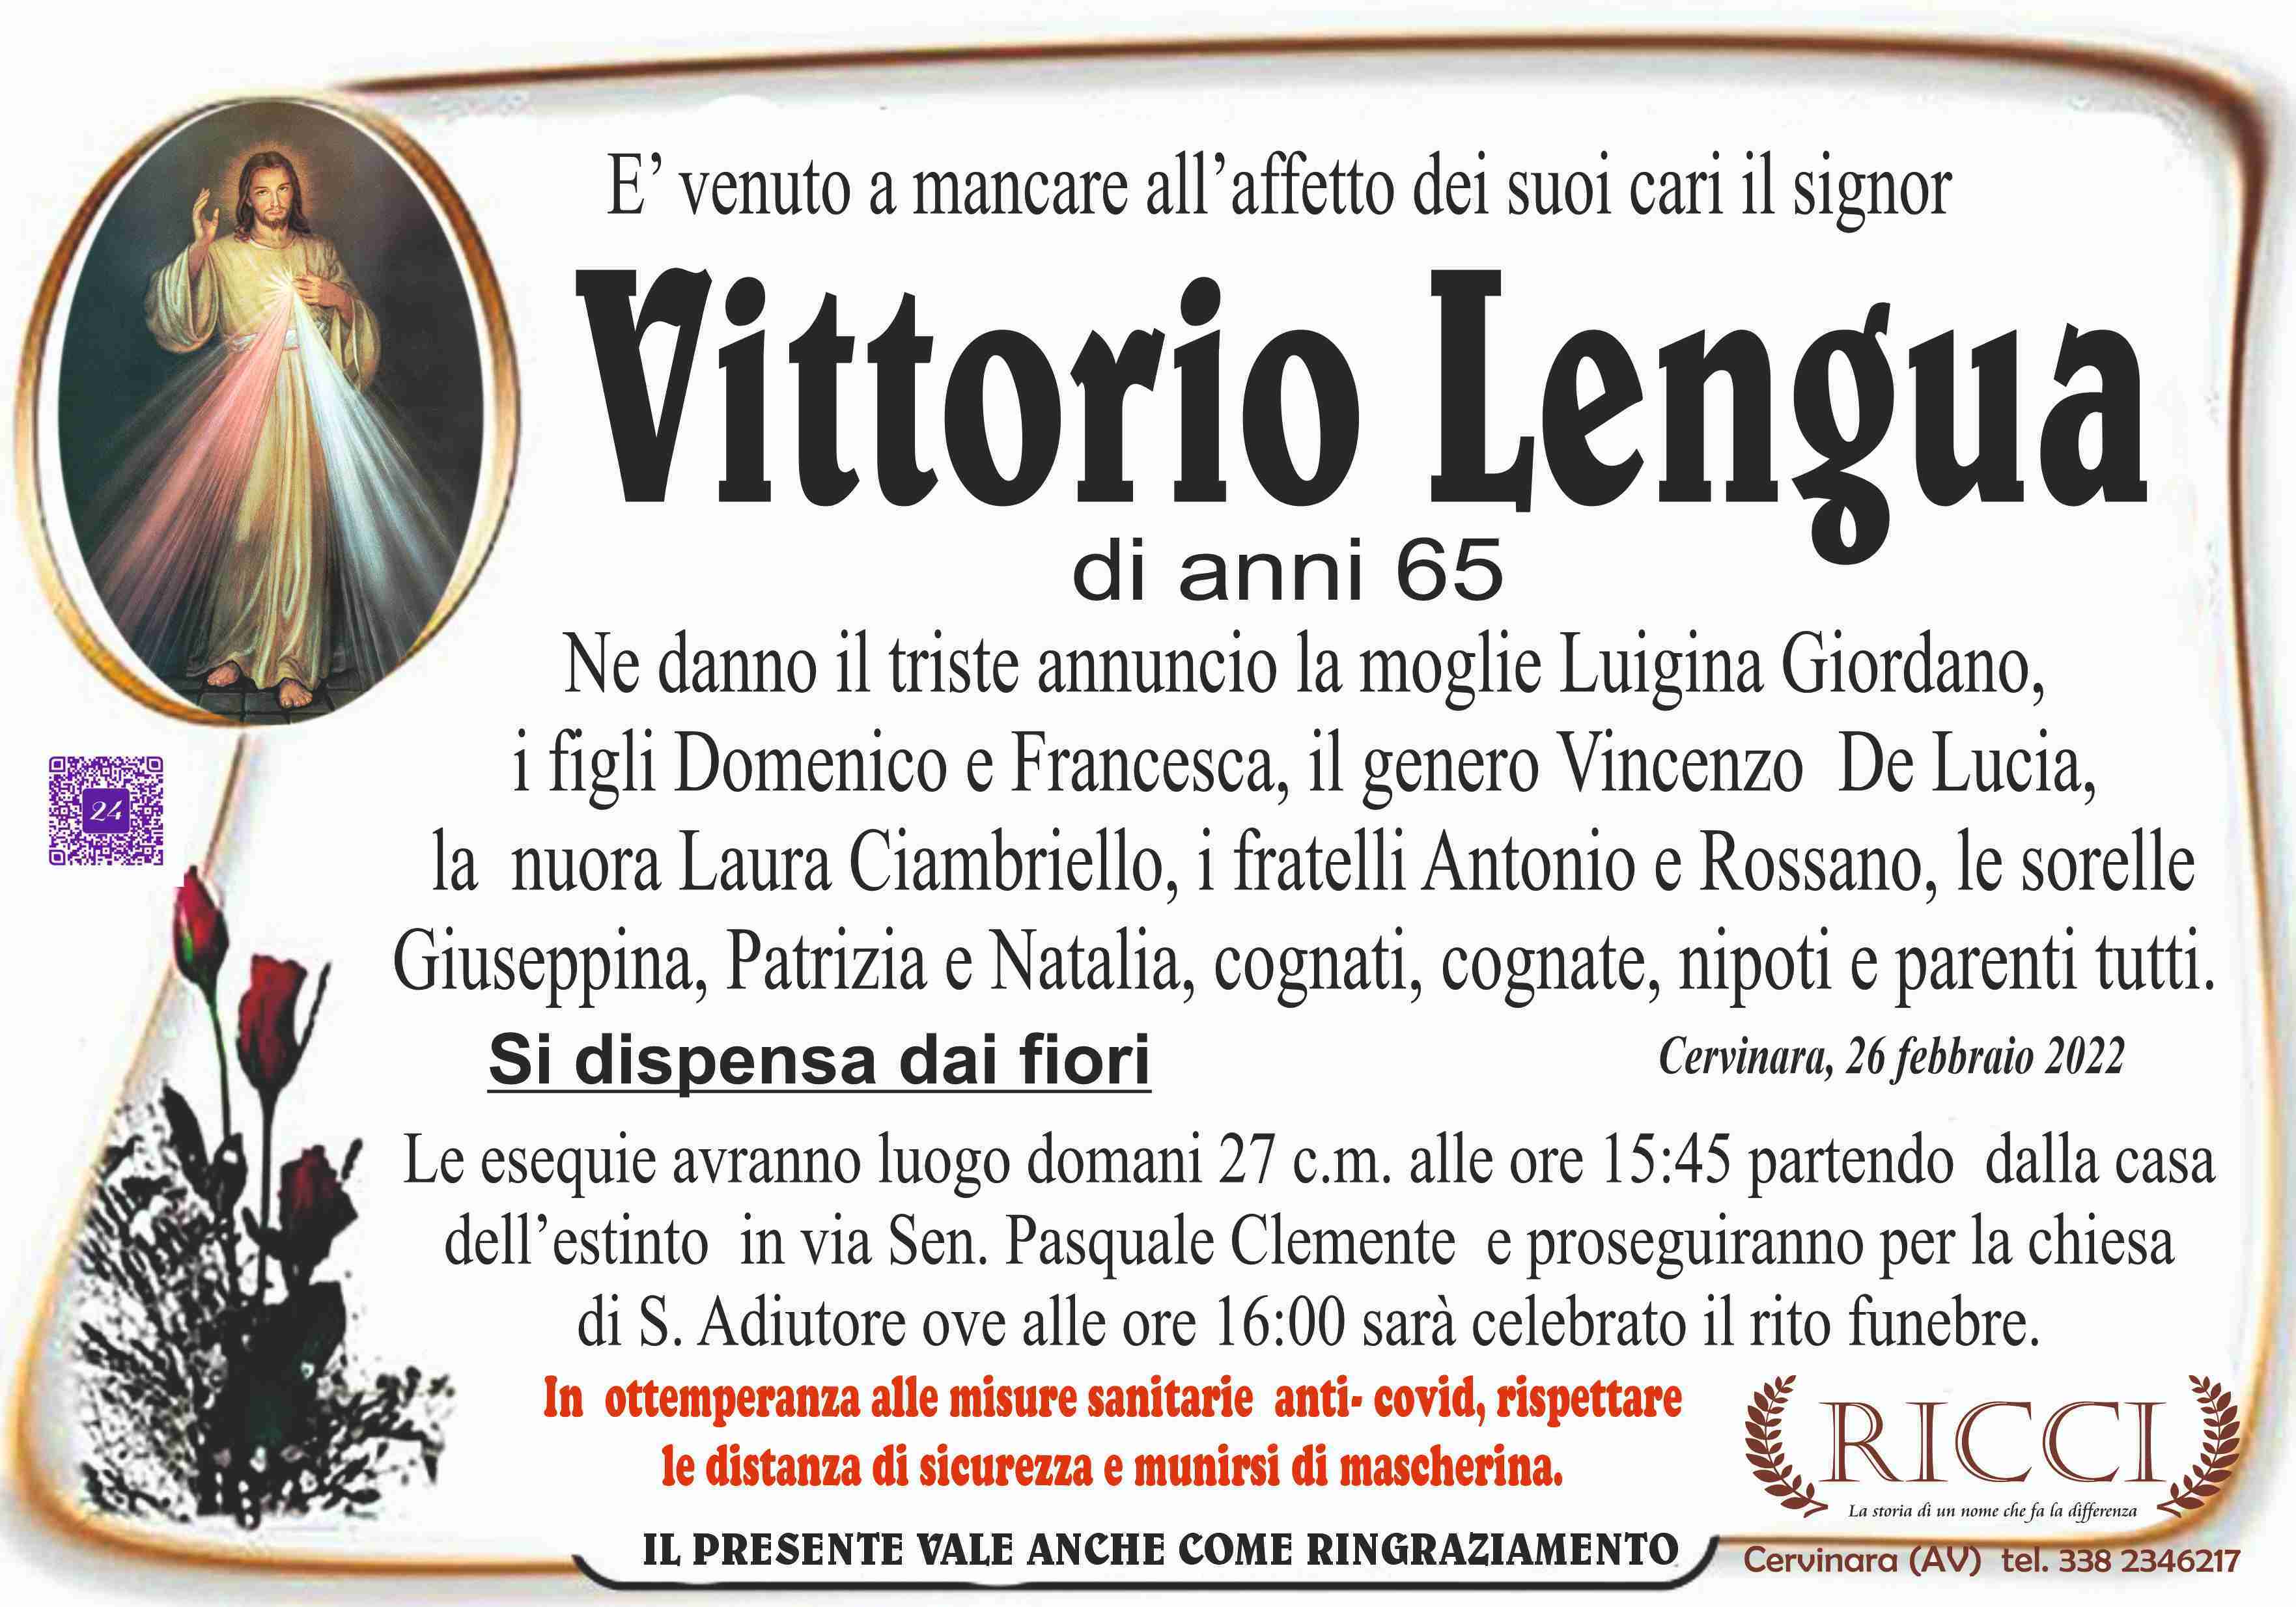 Vittorio Lengua